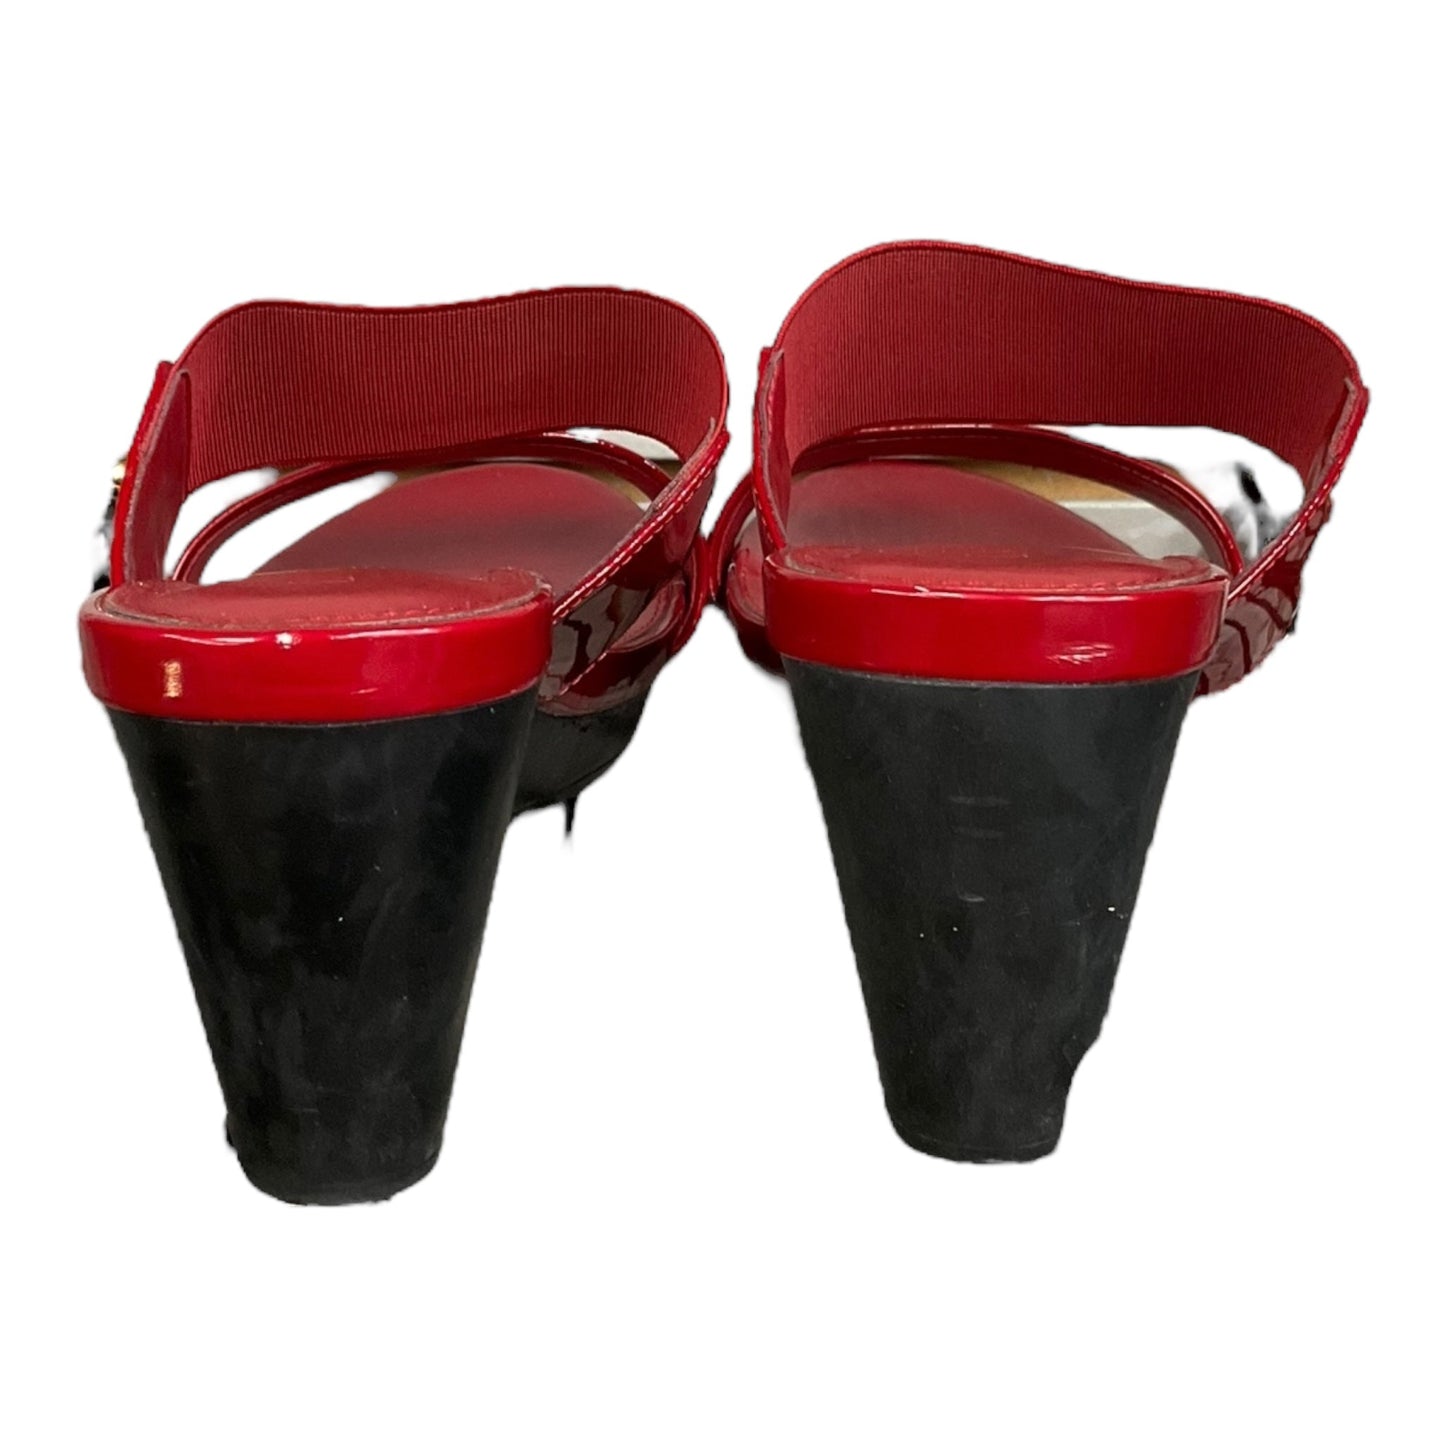 Red Sandals Heels Wedge Lauren By Ralph Lauren, Size 7.5